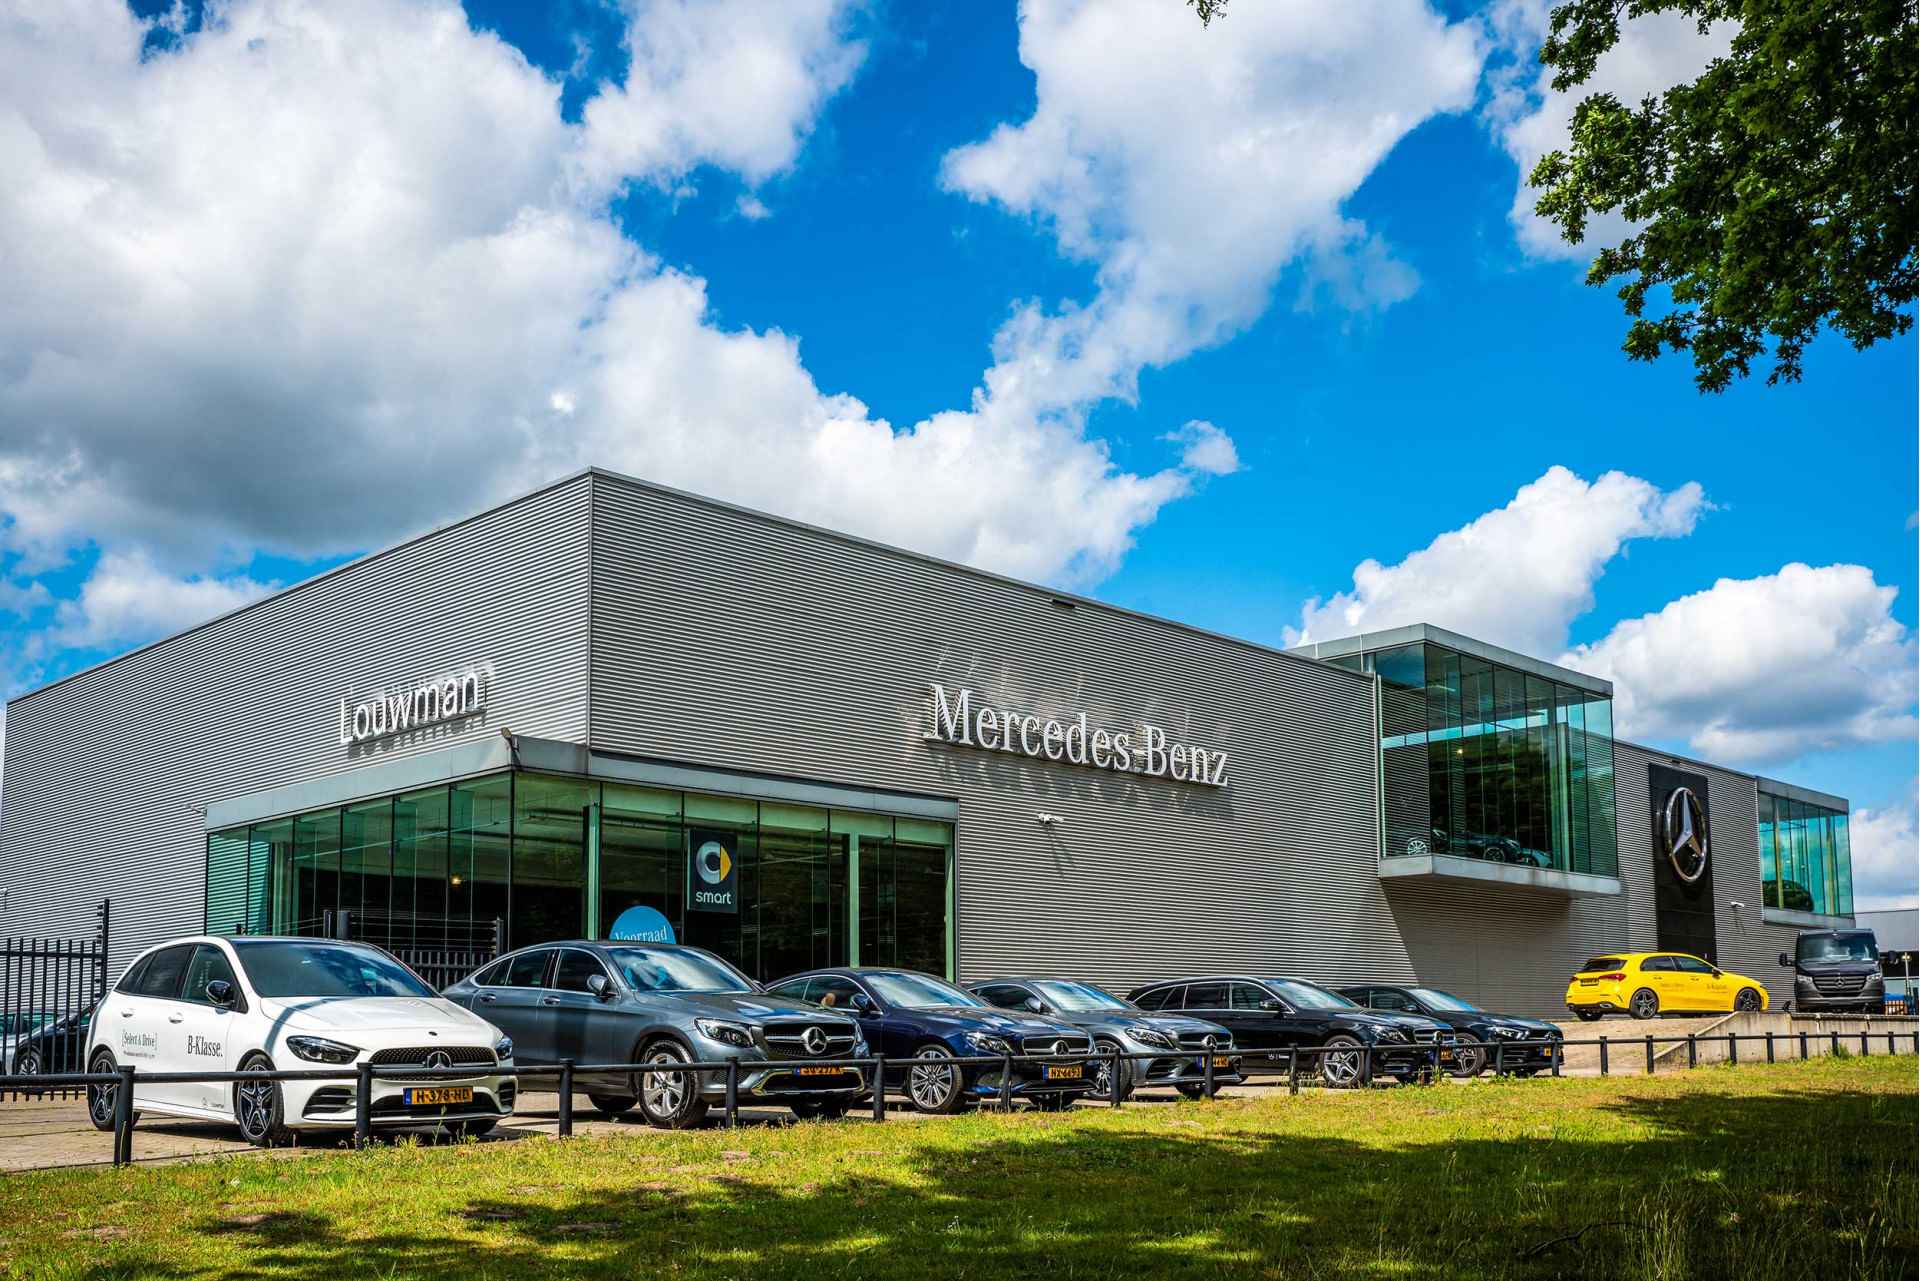 Mercedes-Benz GLE 450 4MATIC AMG Line Premium | Panoramadak | Luchtvering | Burmester | Navigatie | MBUX wide screen | Alarm klasse 3 | Parking support | inclusief 24 maanden MB Certified garantie voor europa - 37/39